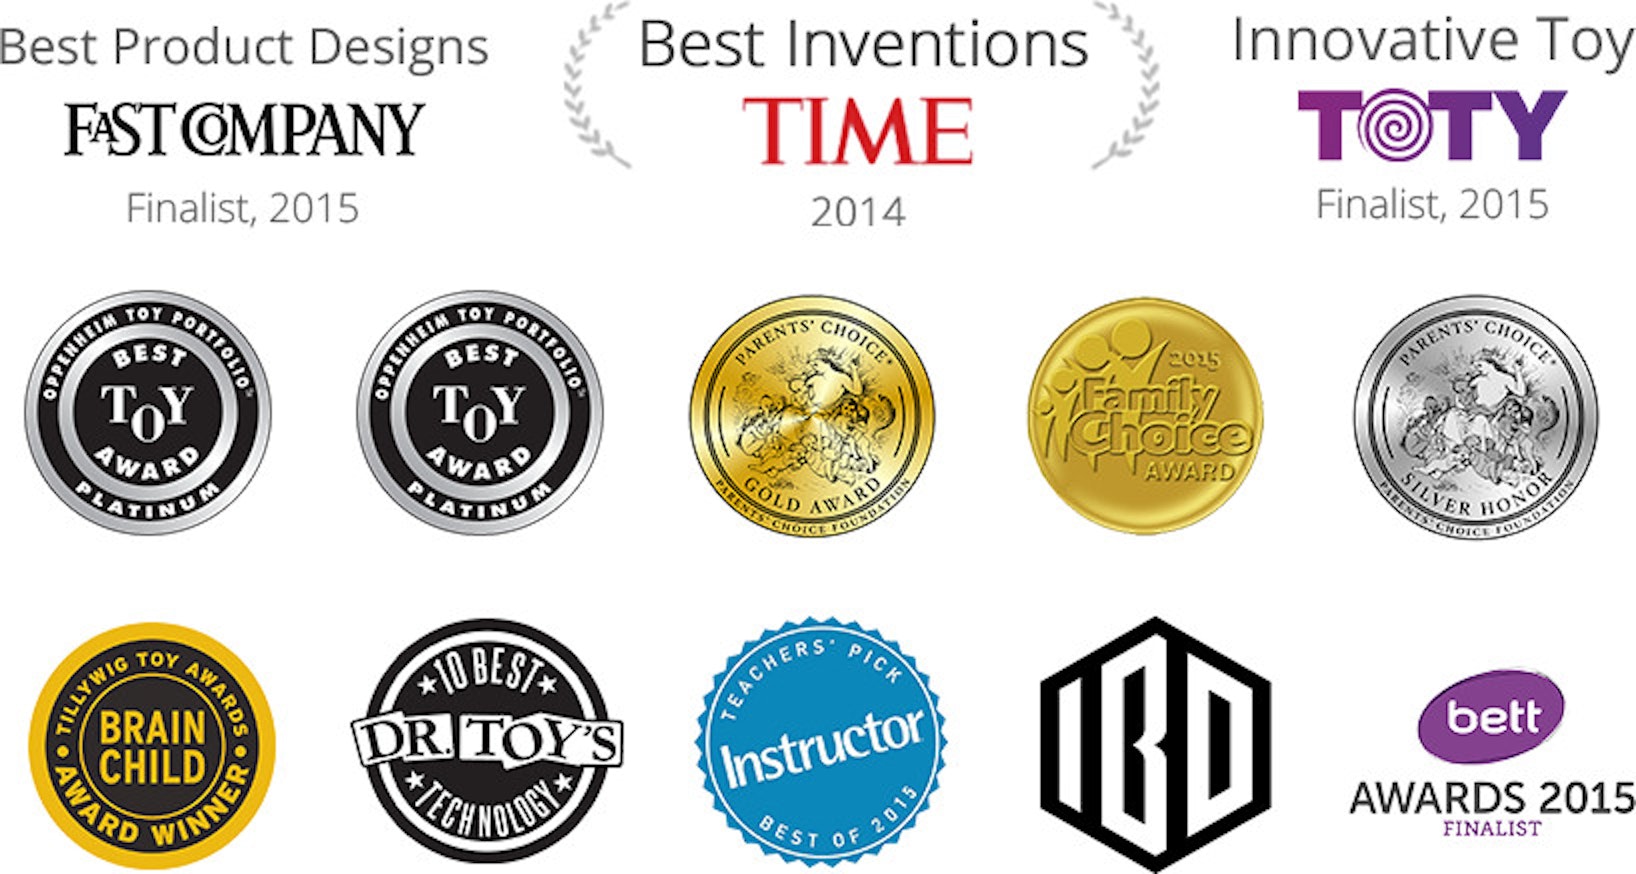 Meilleures inventions TIME 2014, Prix du Meilleur choix des parents, prix du prestigieux Oppenheim best toy award platinum, finaliste TOTY 2015 catégorie Jouets innovants.